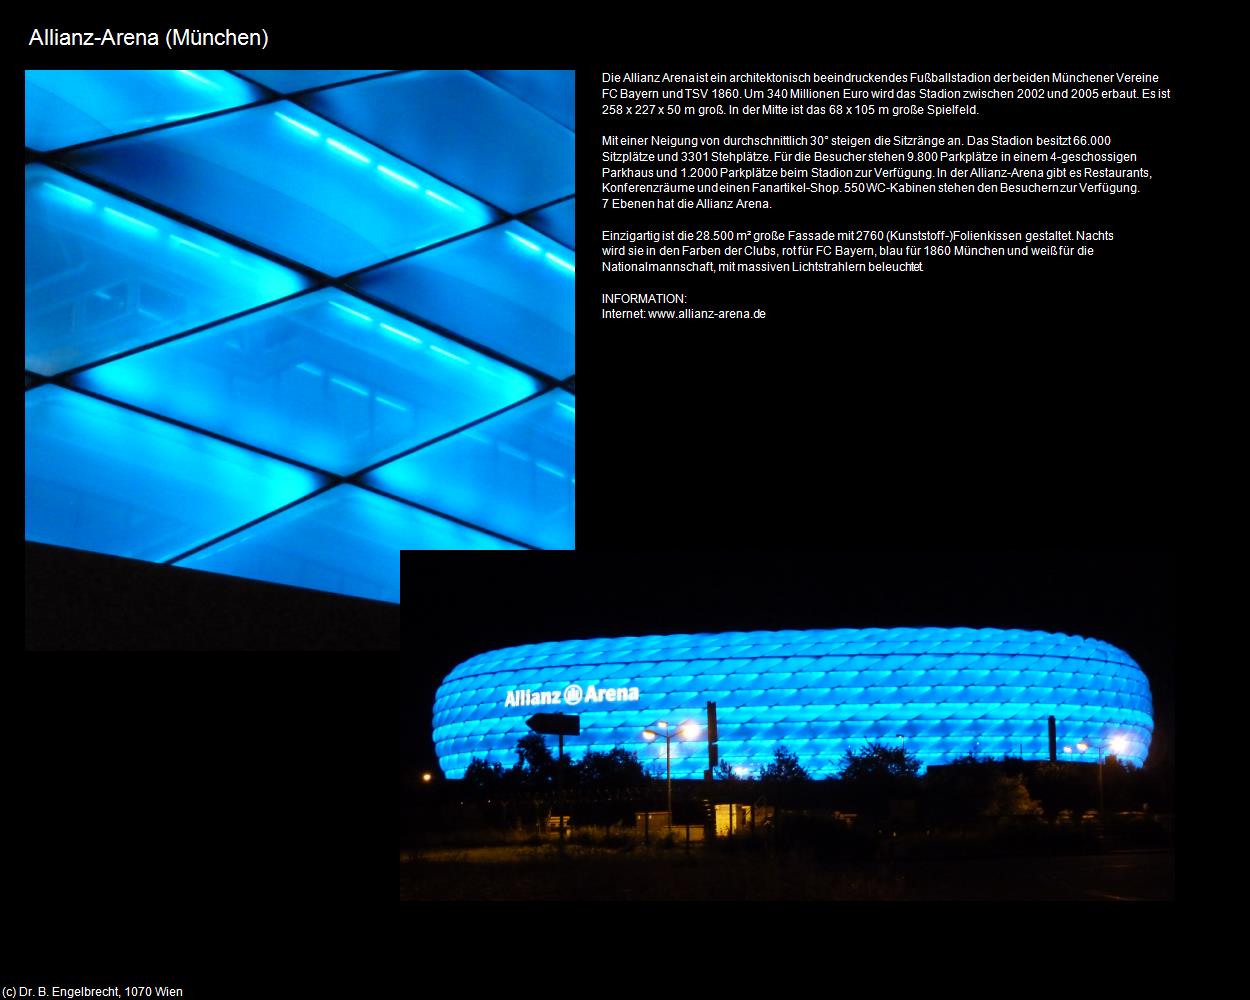 Allianz-Arena (München) in Kulturatlas-BAYERN